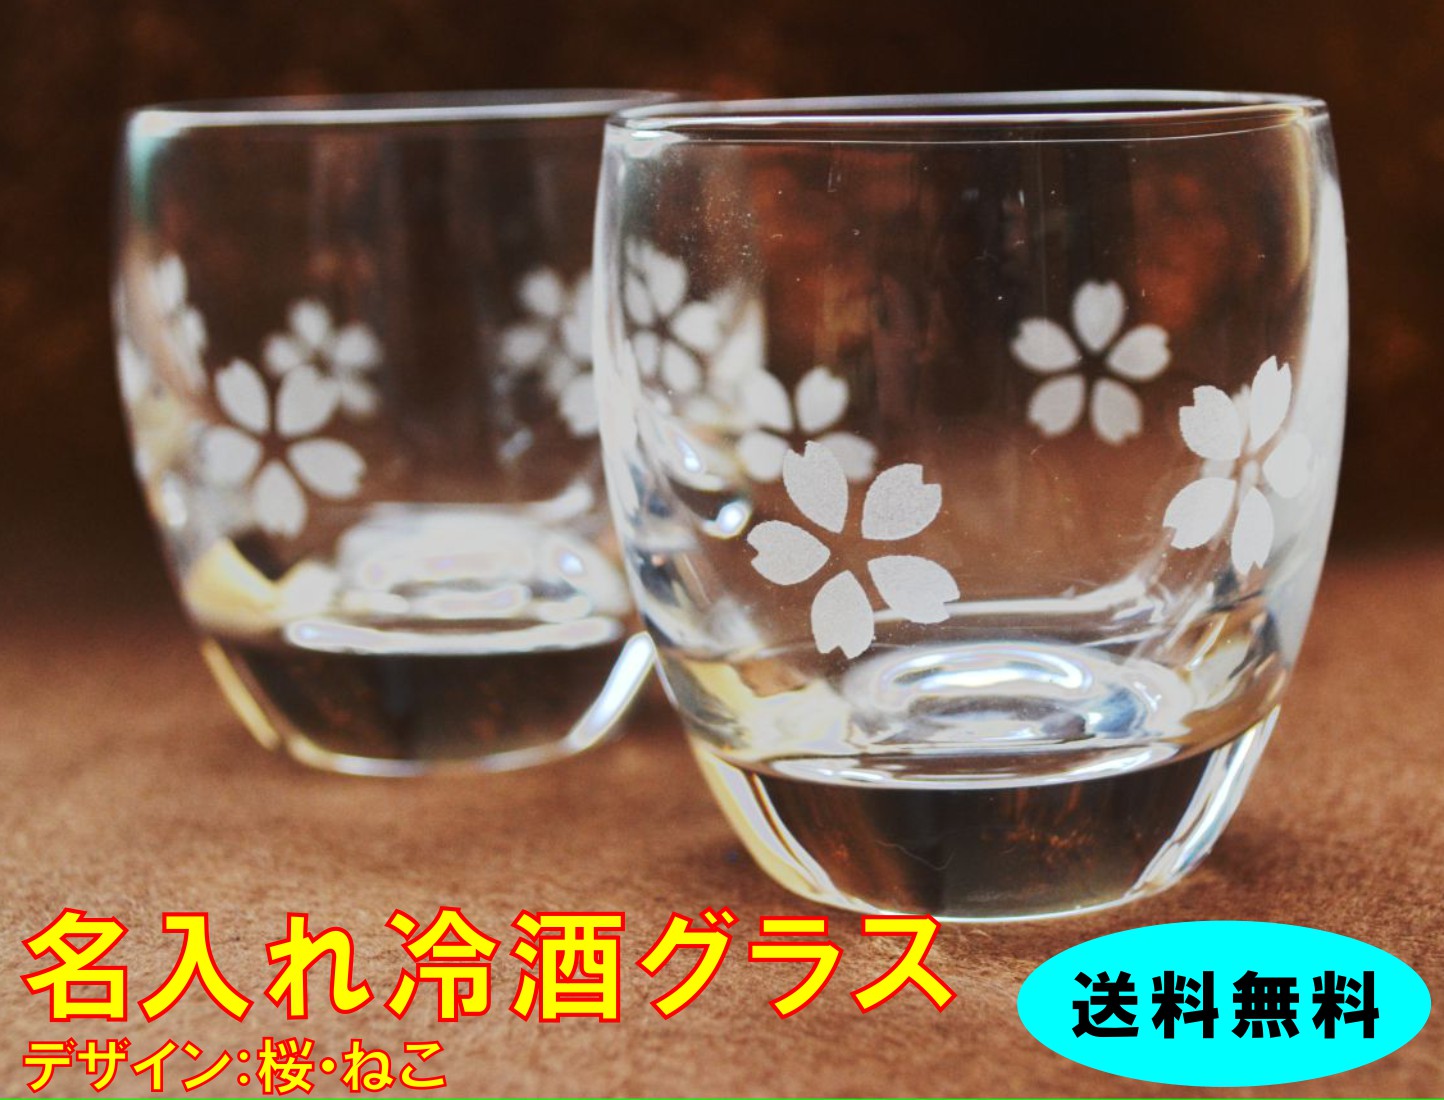 楽天市場 ガラス製のおしゃれな冷酒グラス ペアセット デザイン 桜 ネコ 丸みグラス 名入れ可 日本酒 グラス ペアセット 冷酒 グラス 名入り グラス ペアグラス 送料無料 Rcp 05p09jul16 名入れギフト専門店 アトリエ桜